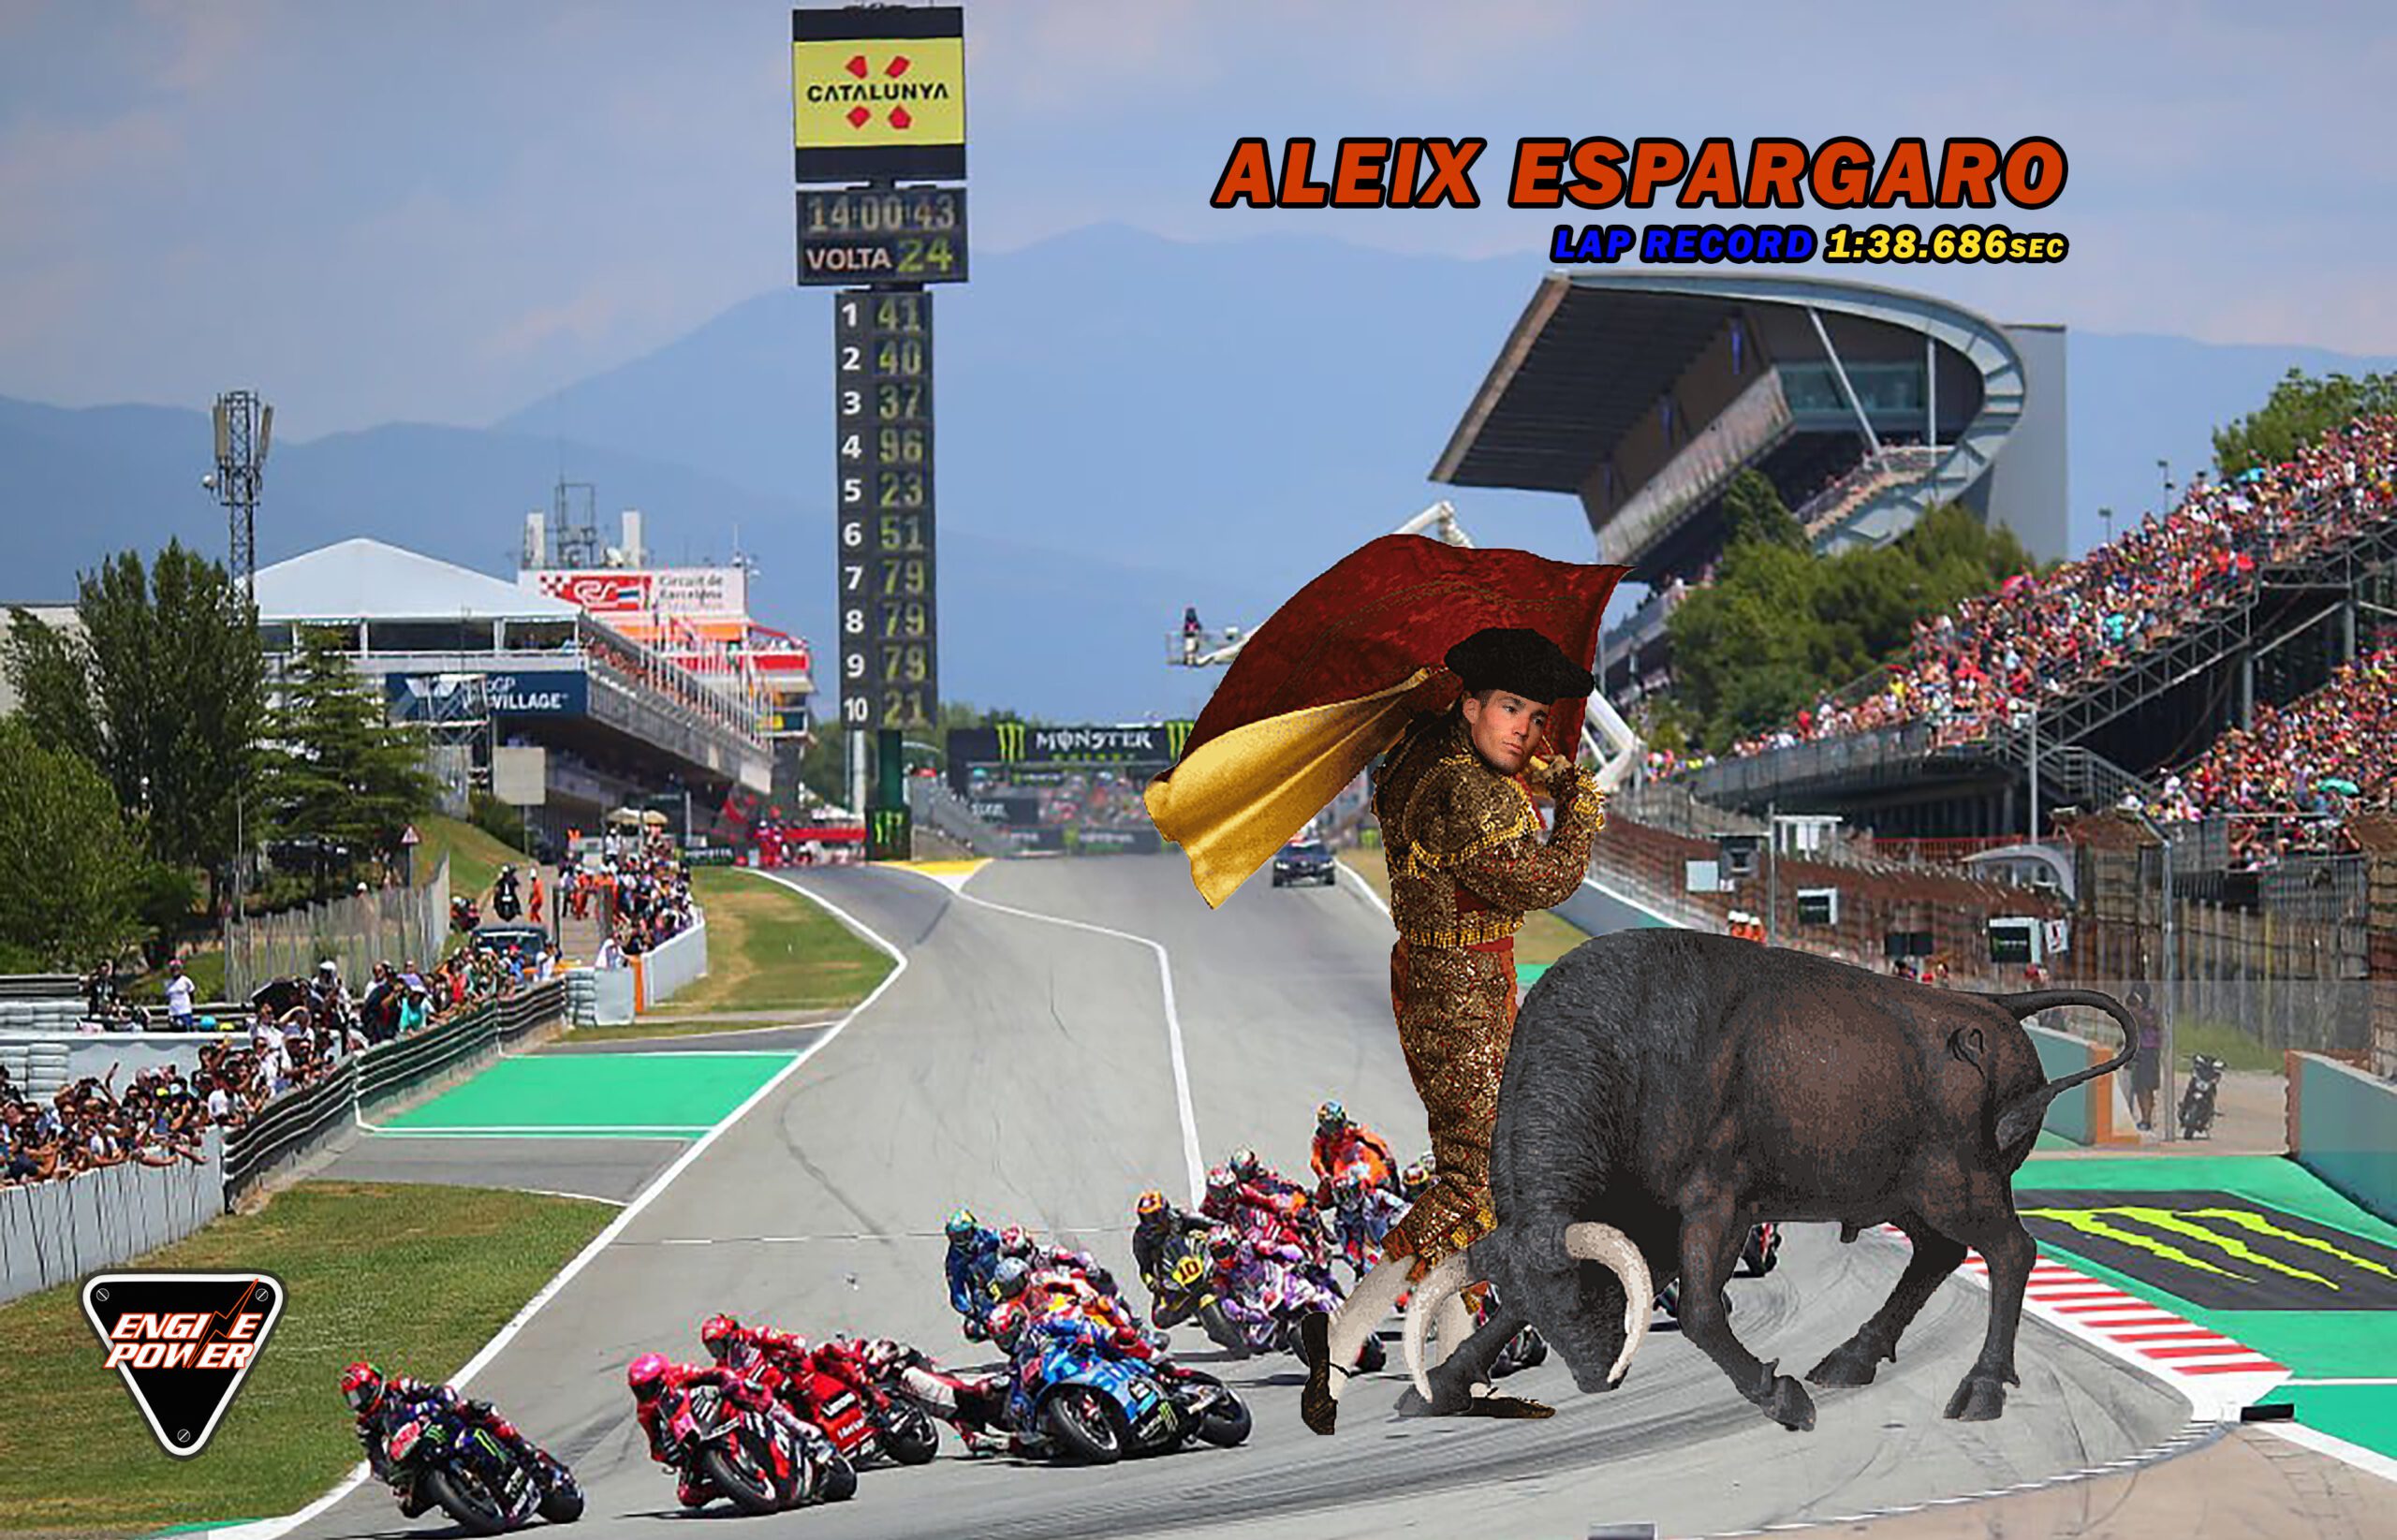 MotoGP Καταλονίας : Ο Espargaro σπάει το ρεκόρ γύρου